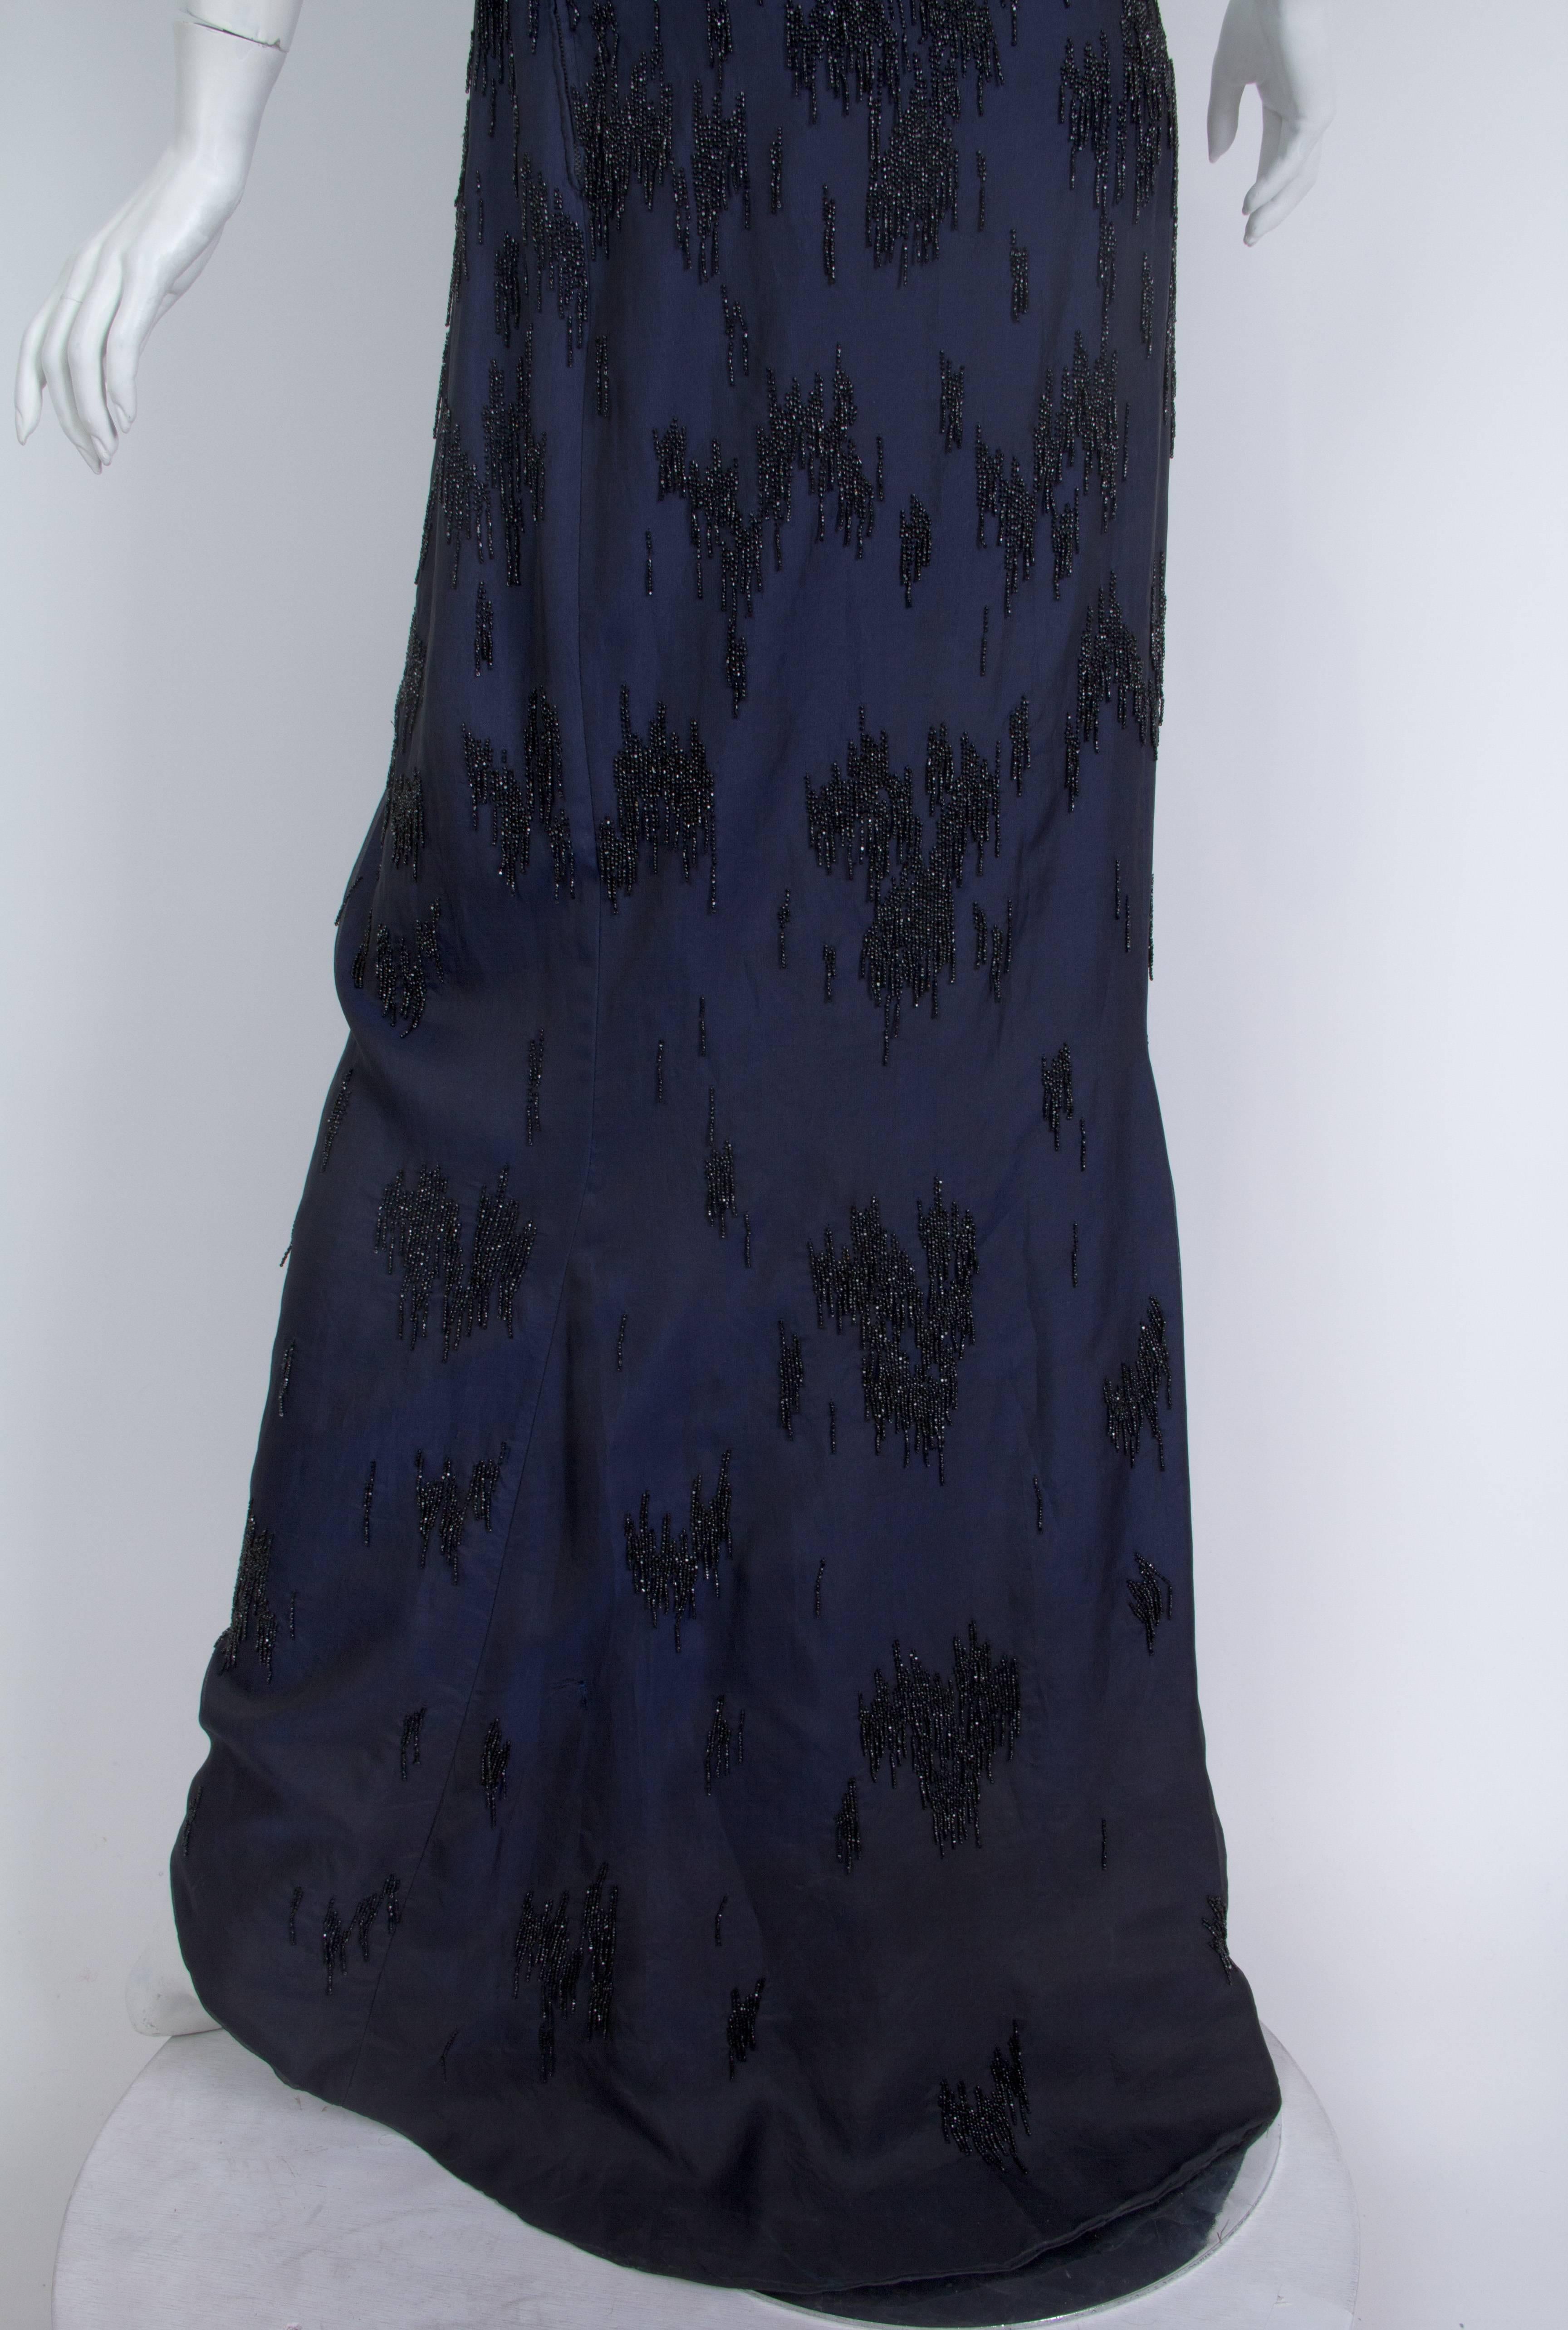 PIERRE BALMAIN Robe haute couture en organza de soie perlée noire et bleue, années 1950 en vente 2